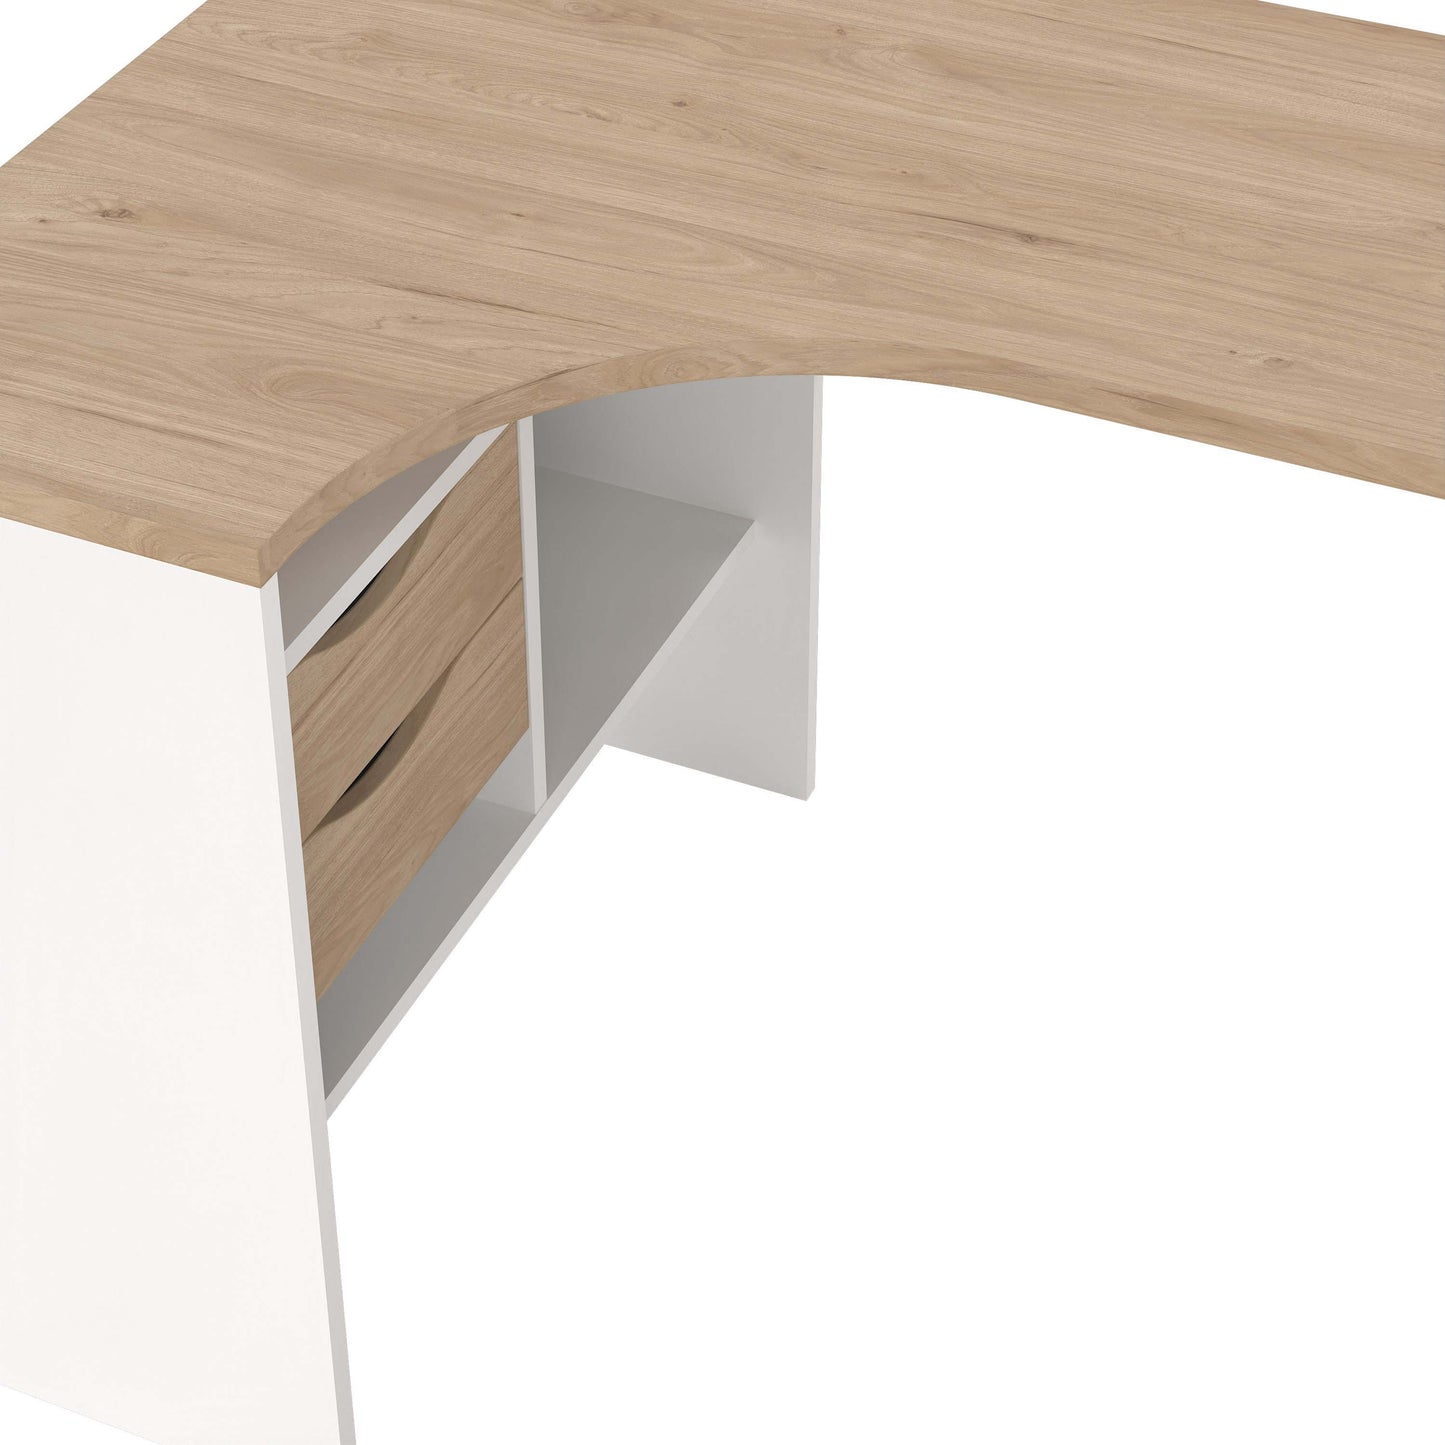 Function Plus Corner Desk - White/Oak - 8011849ak